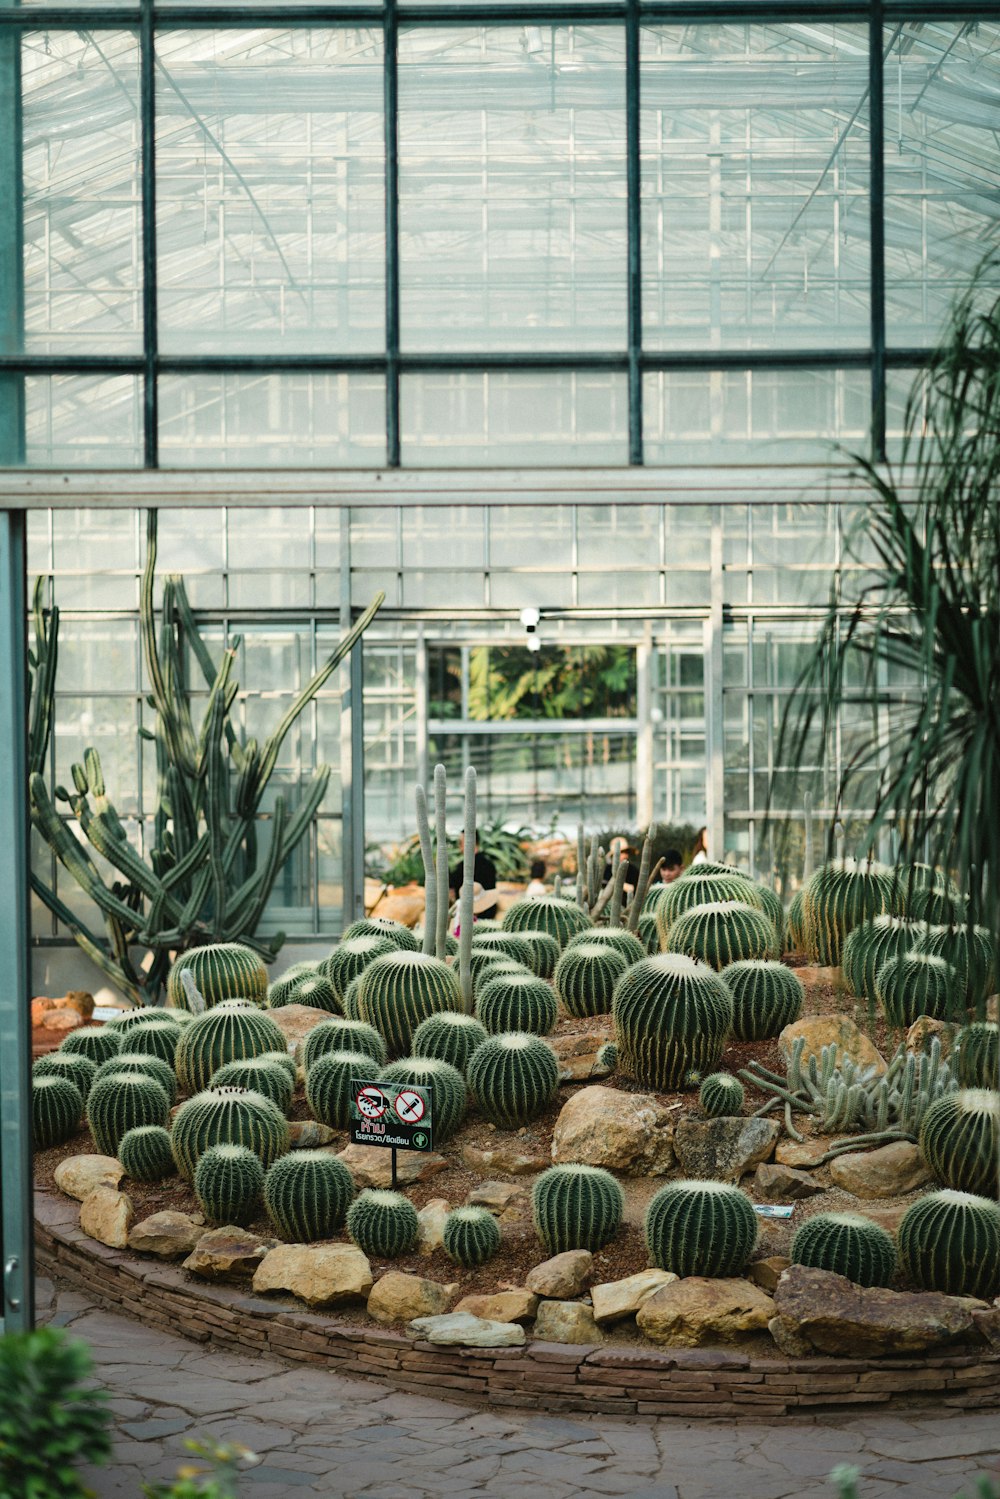 Plantas verdes de cactus dentro del invernadero